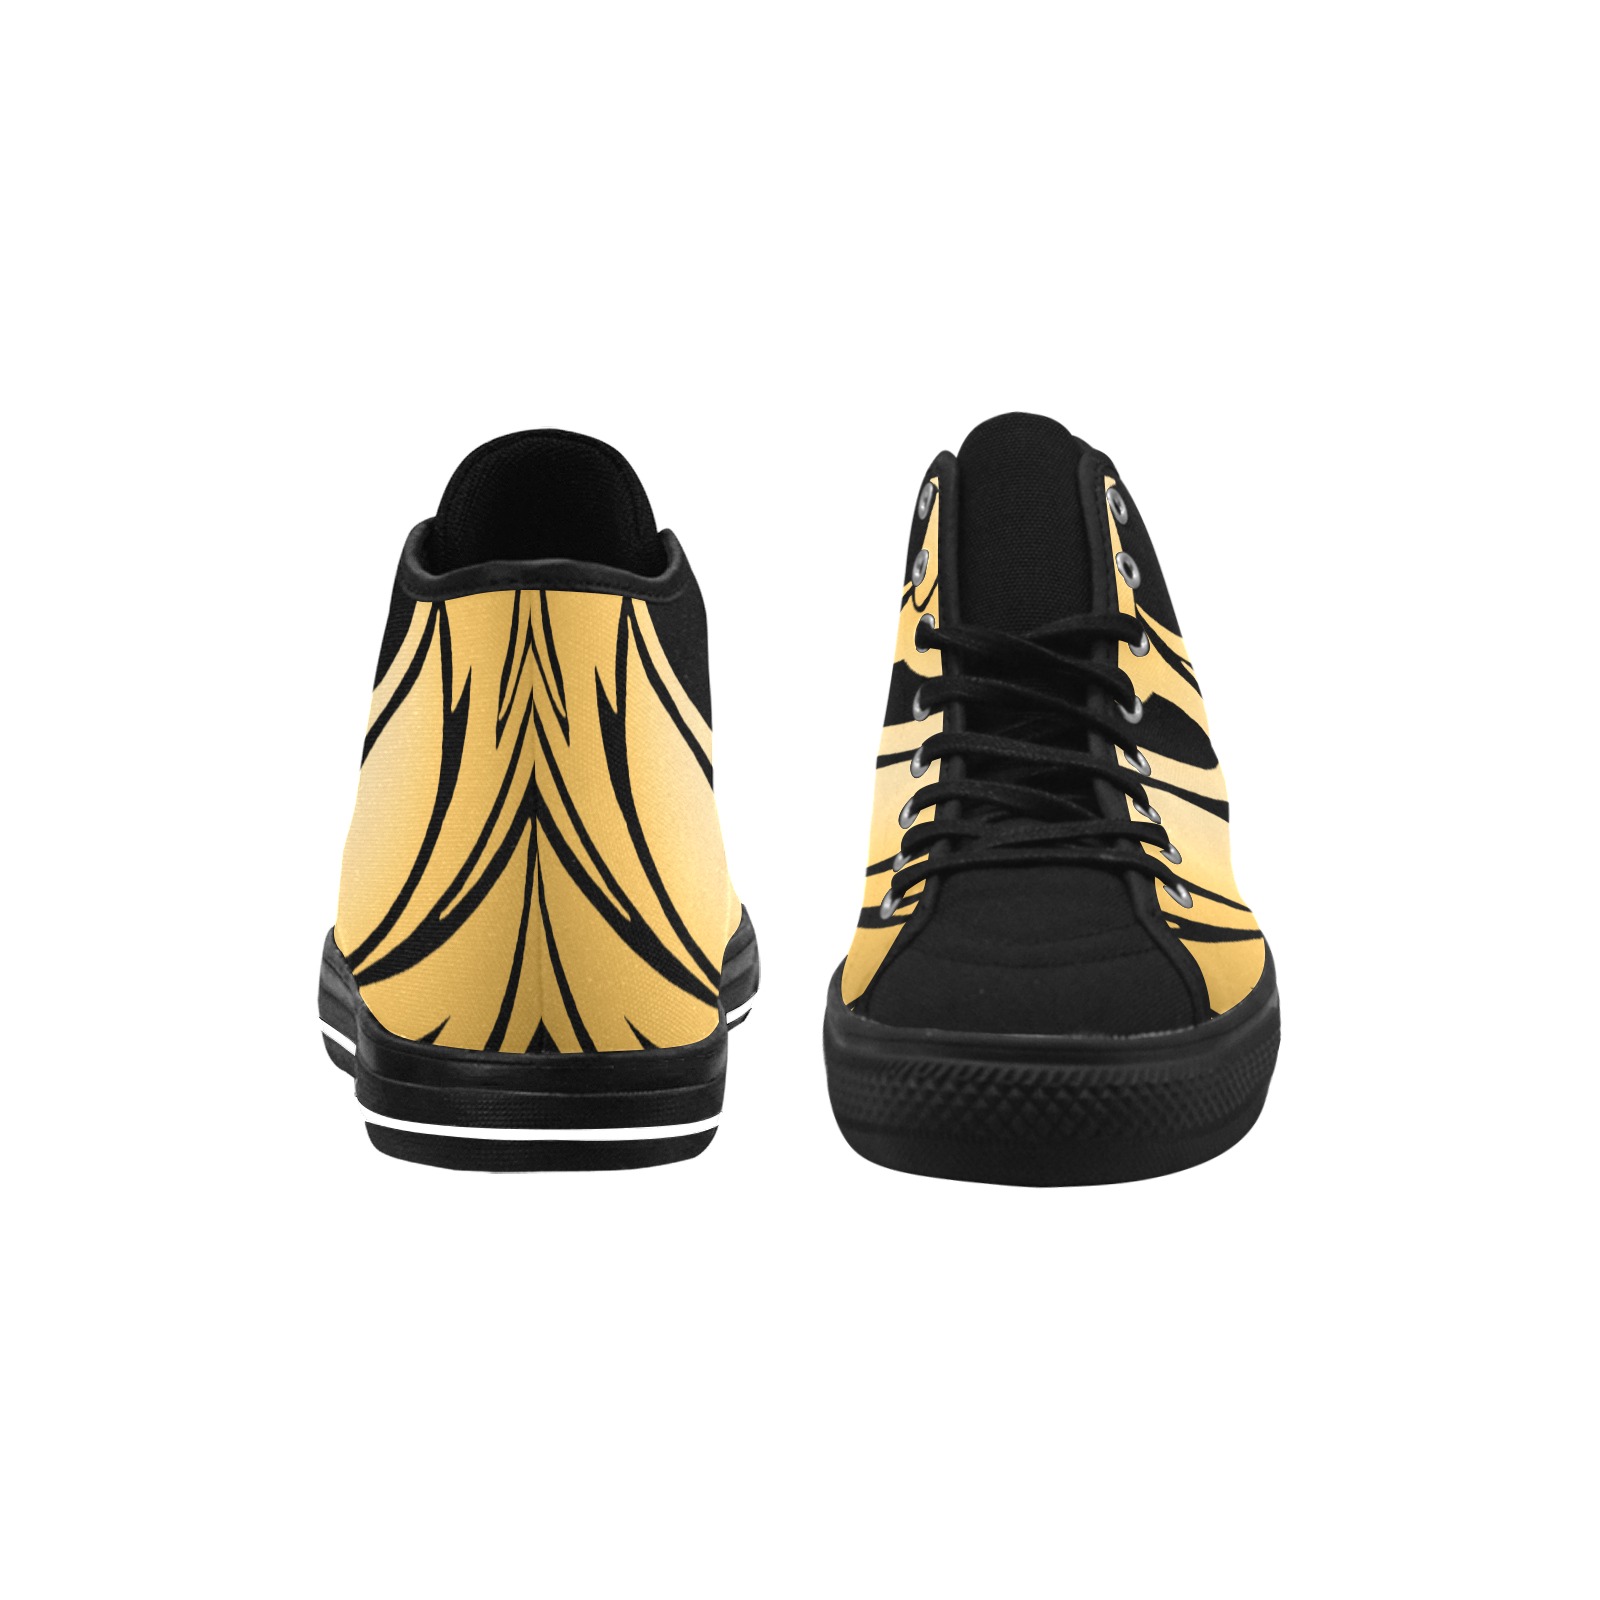 Golden Phoenix Rising on Black Vancouver H Men's Canvas Shoes (1013-1)